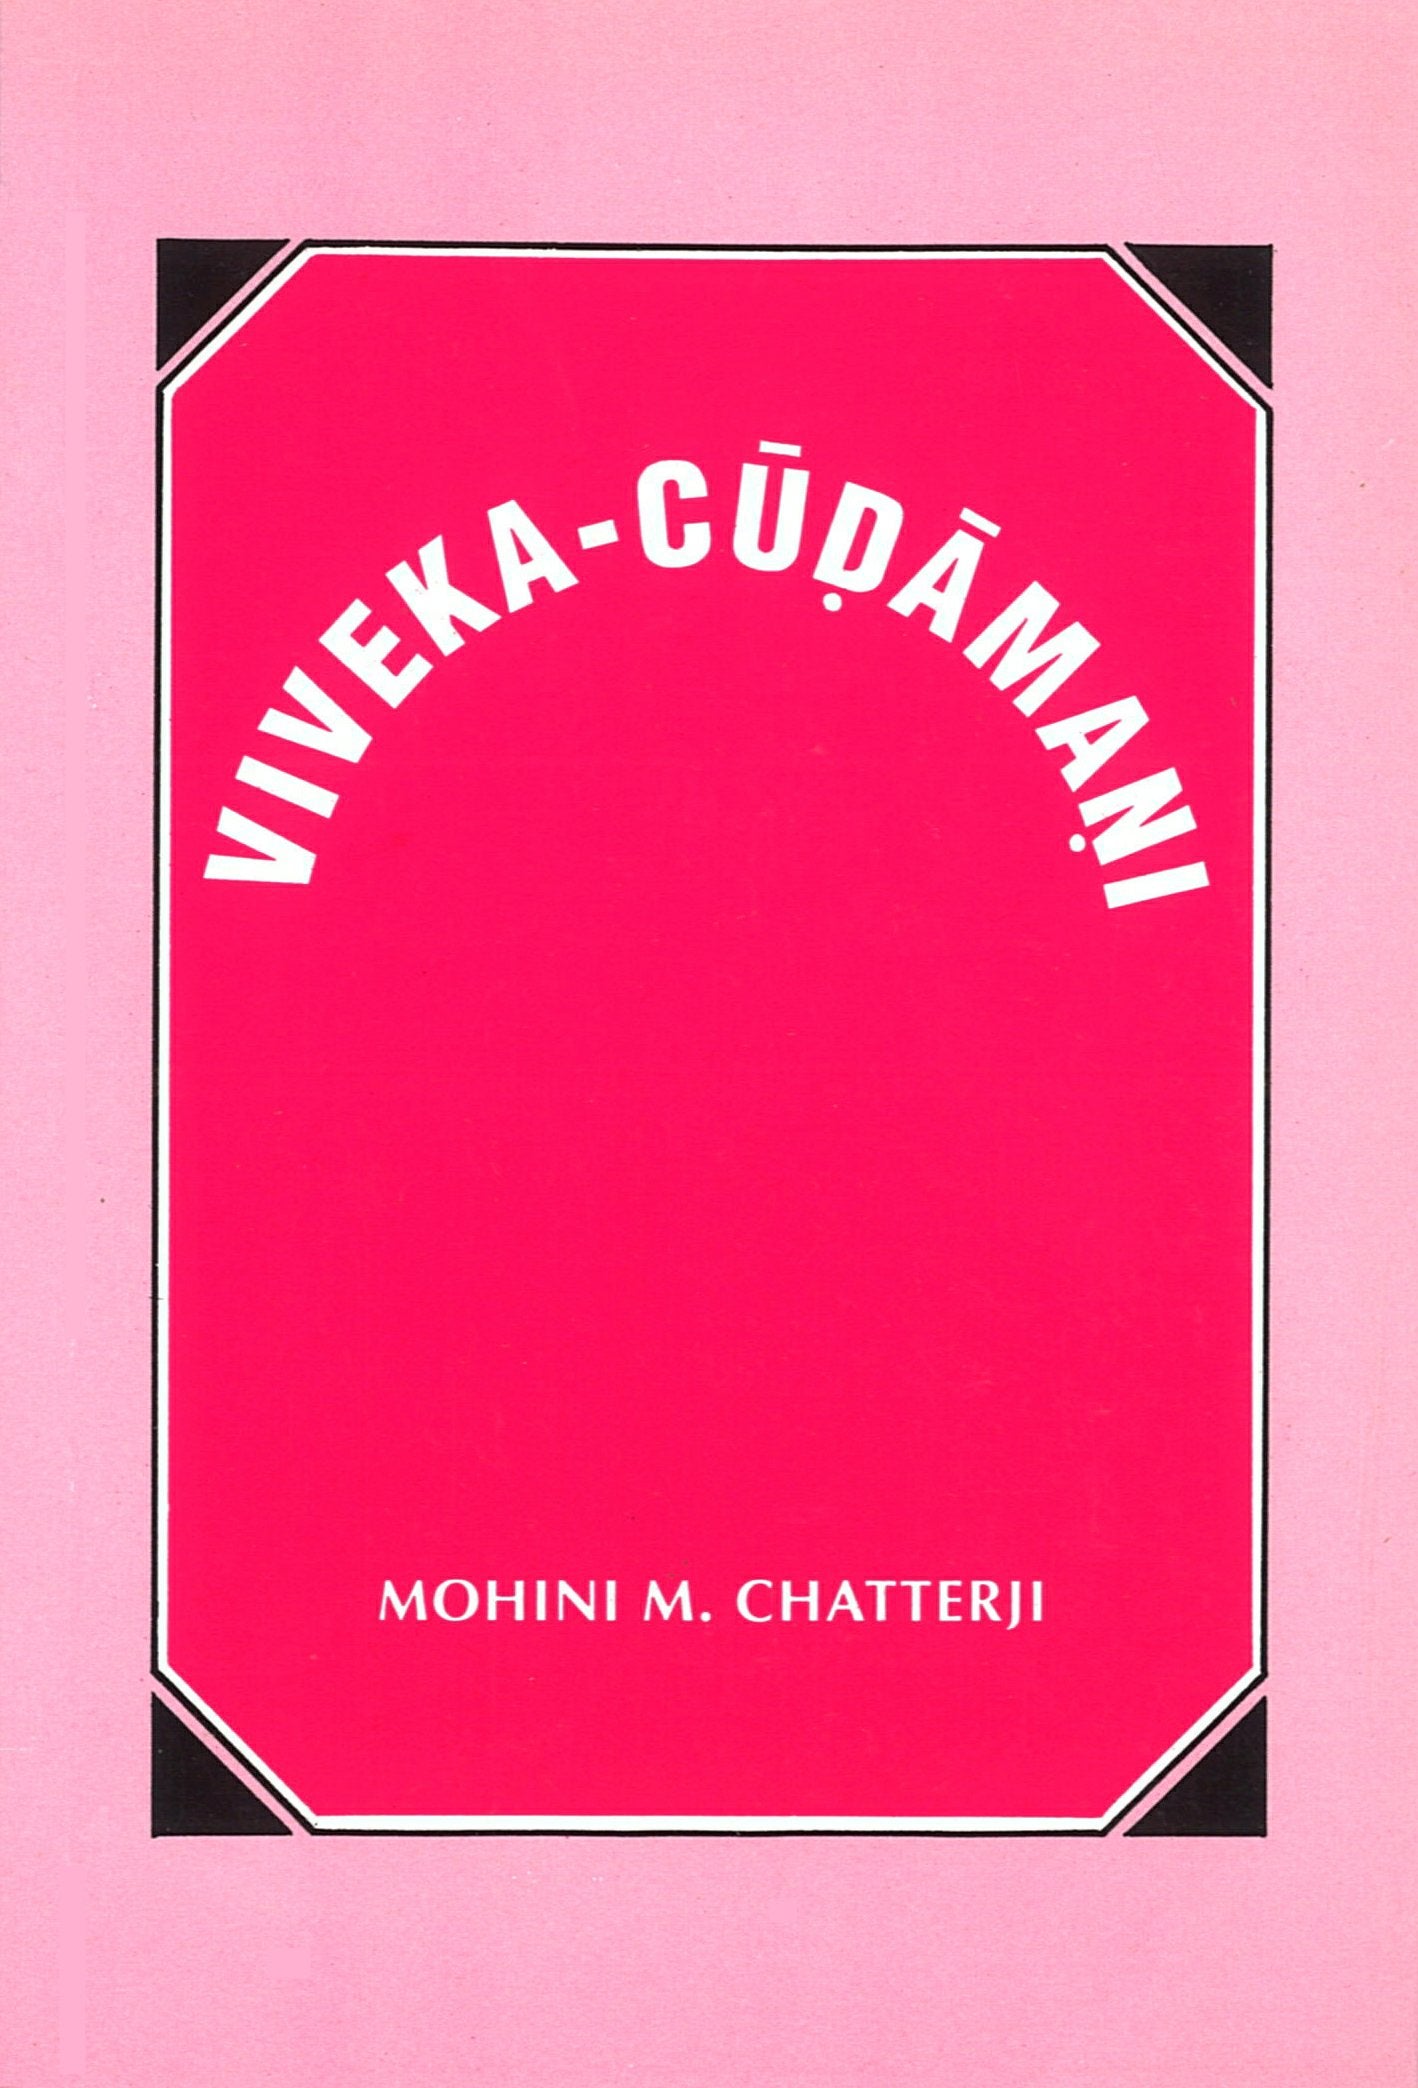 Viveka-Chudamani